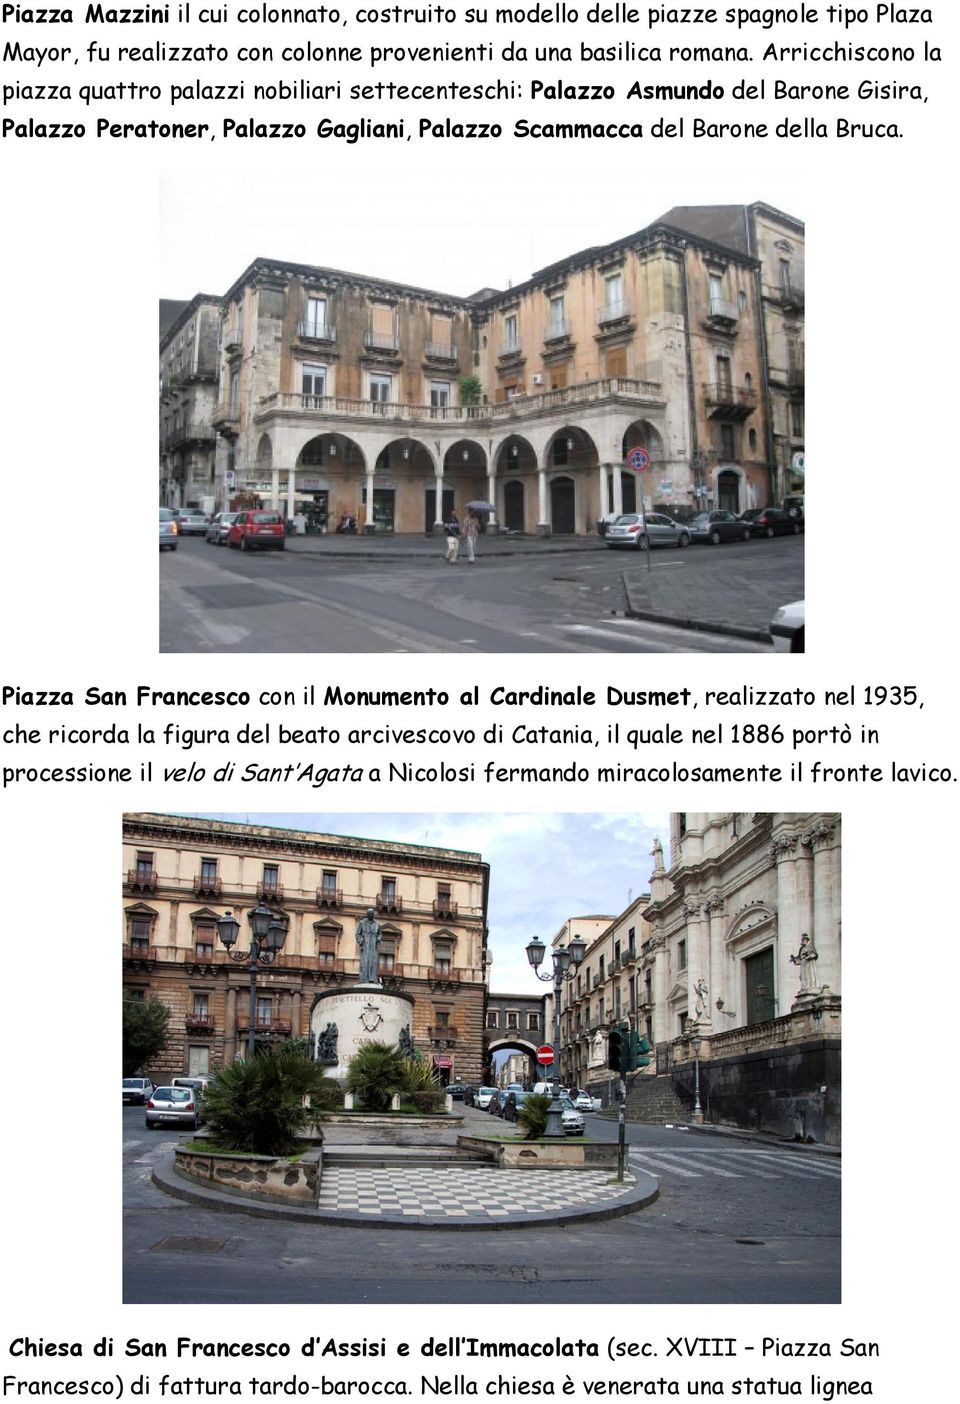 Piazza San Francesco con il Monumento al Cardinale Dusmet, realizzato nel 1935, che ricorda la figura del beato arcivescovo di Catania, il quale nel 1886 portò in processione il velo